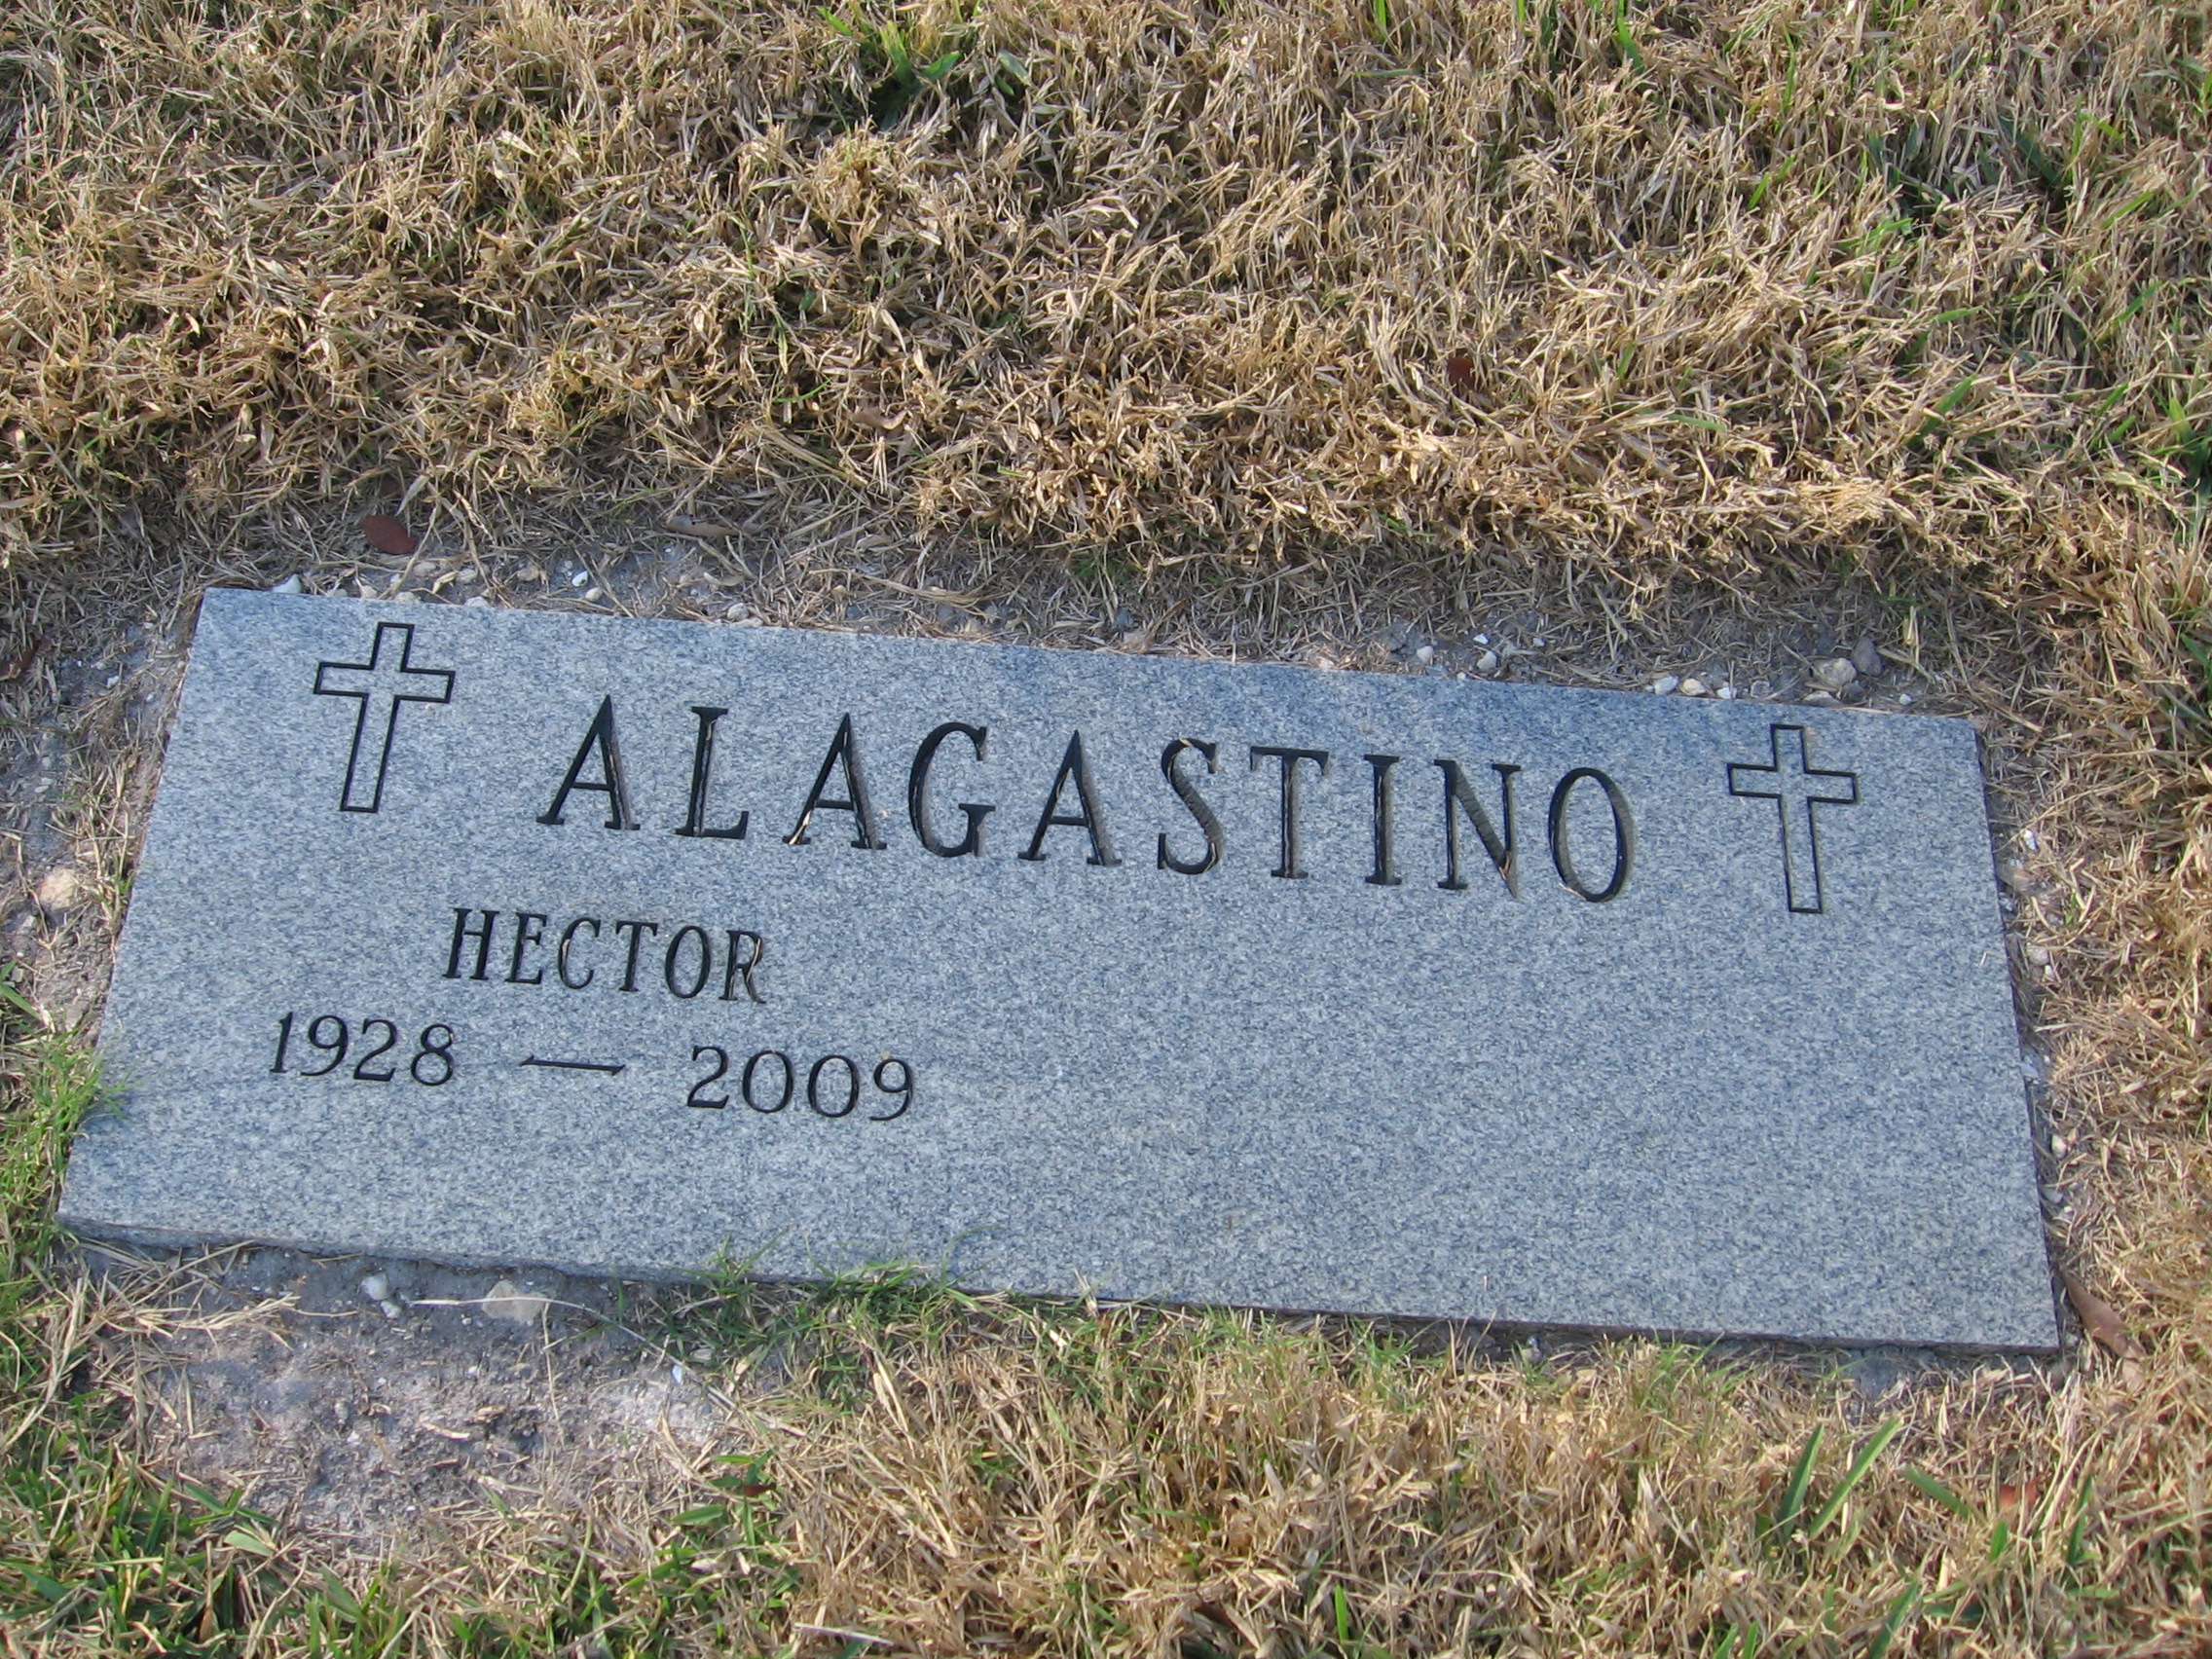 Hector Alagastino